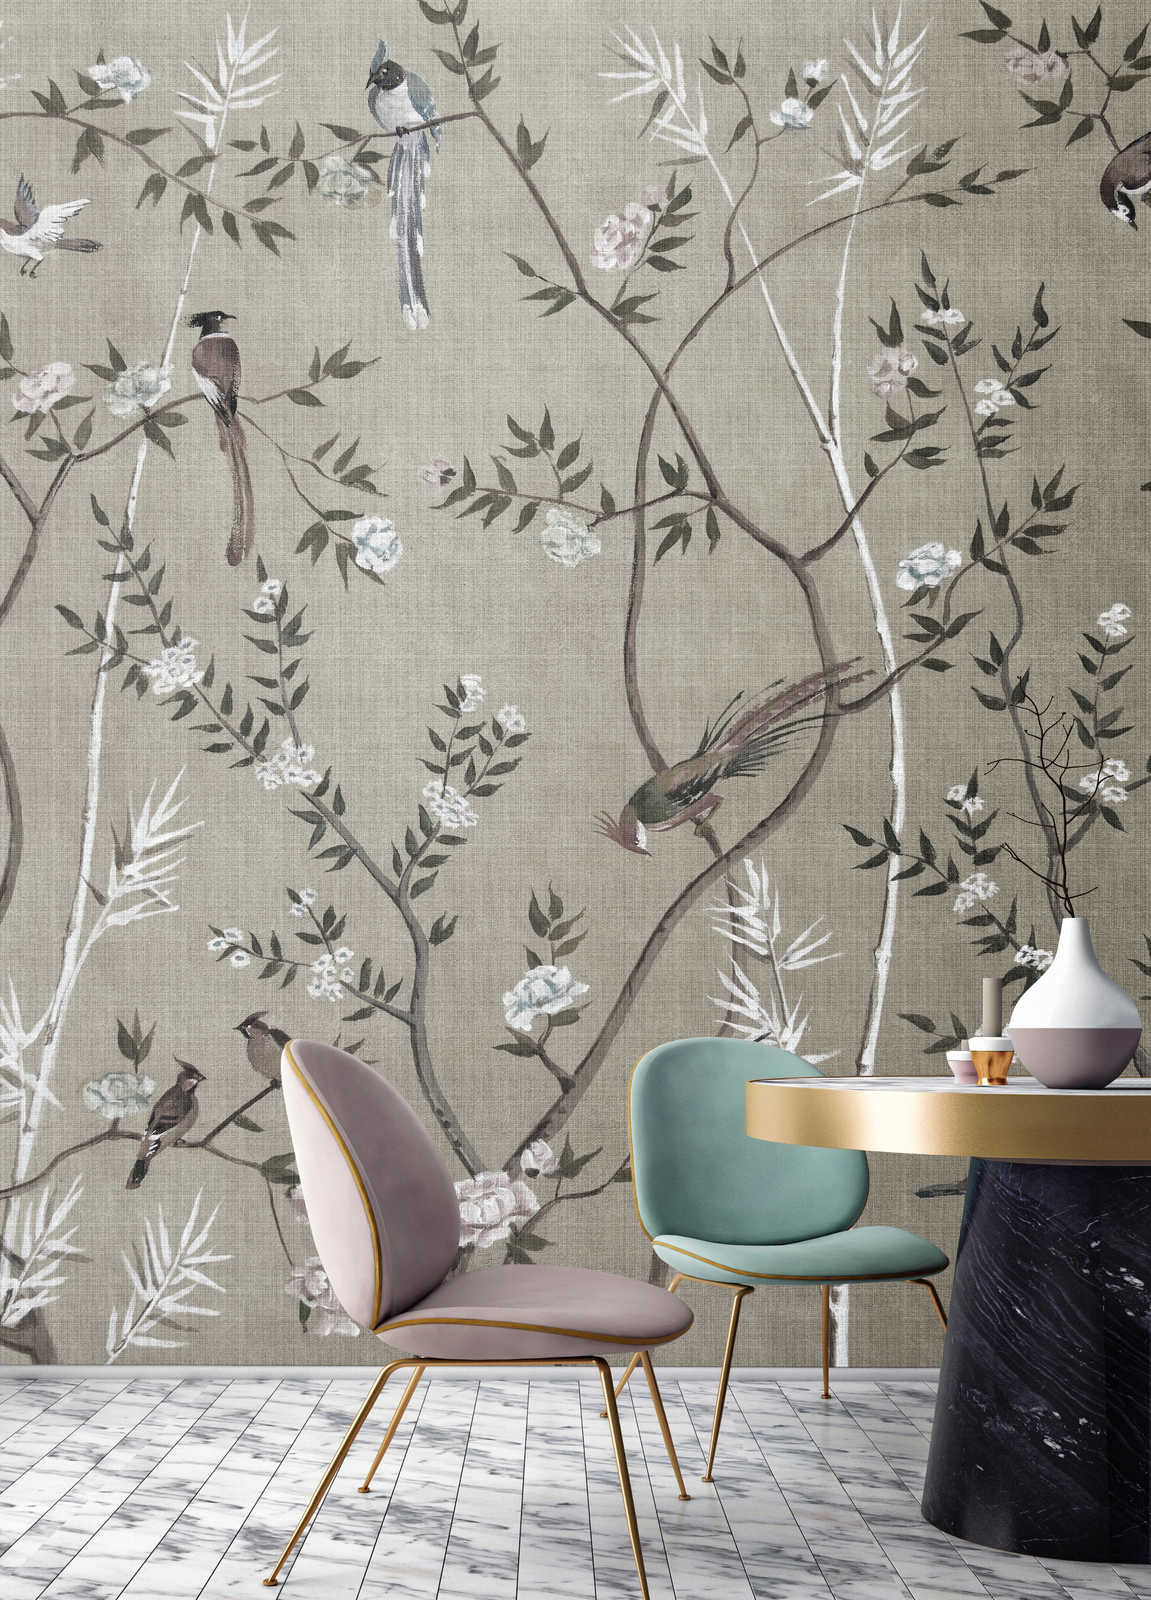             Tea Room 2 - Papier peint panoramique Oiseaux & fleurs Design in Greige
        